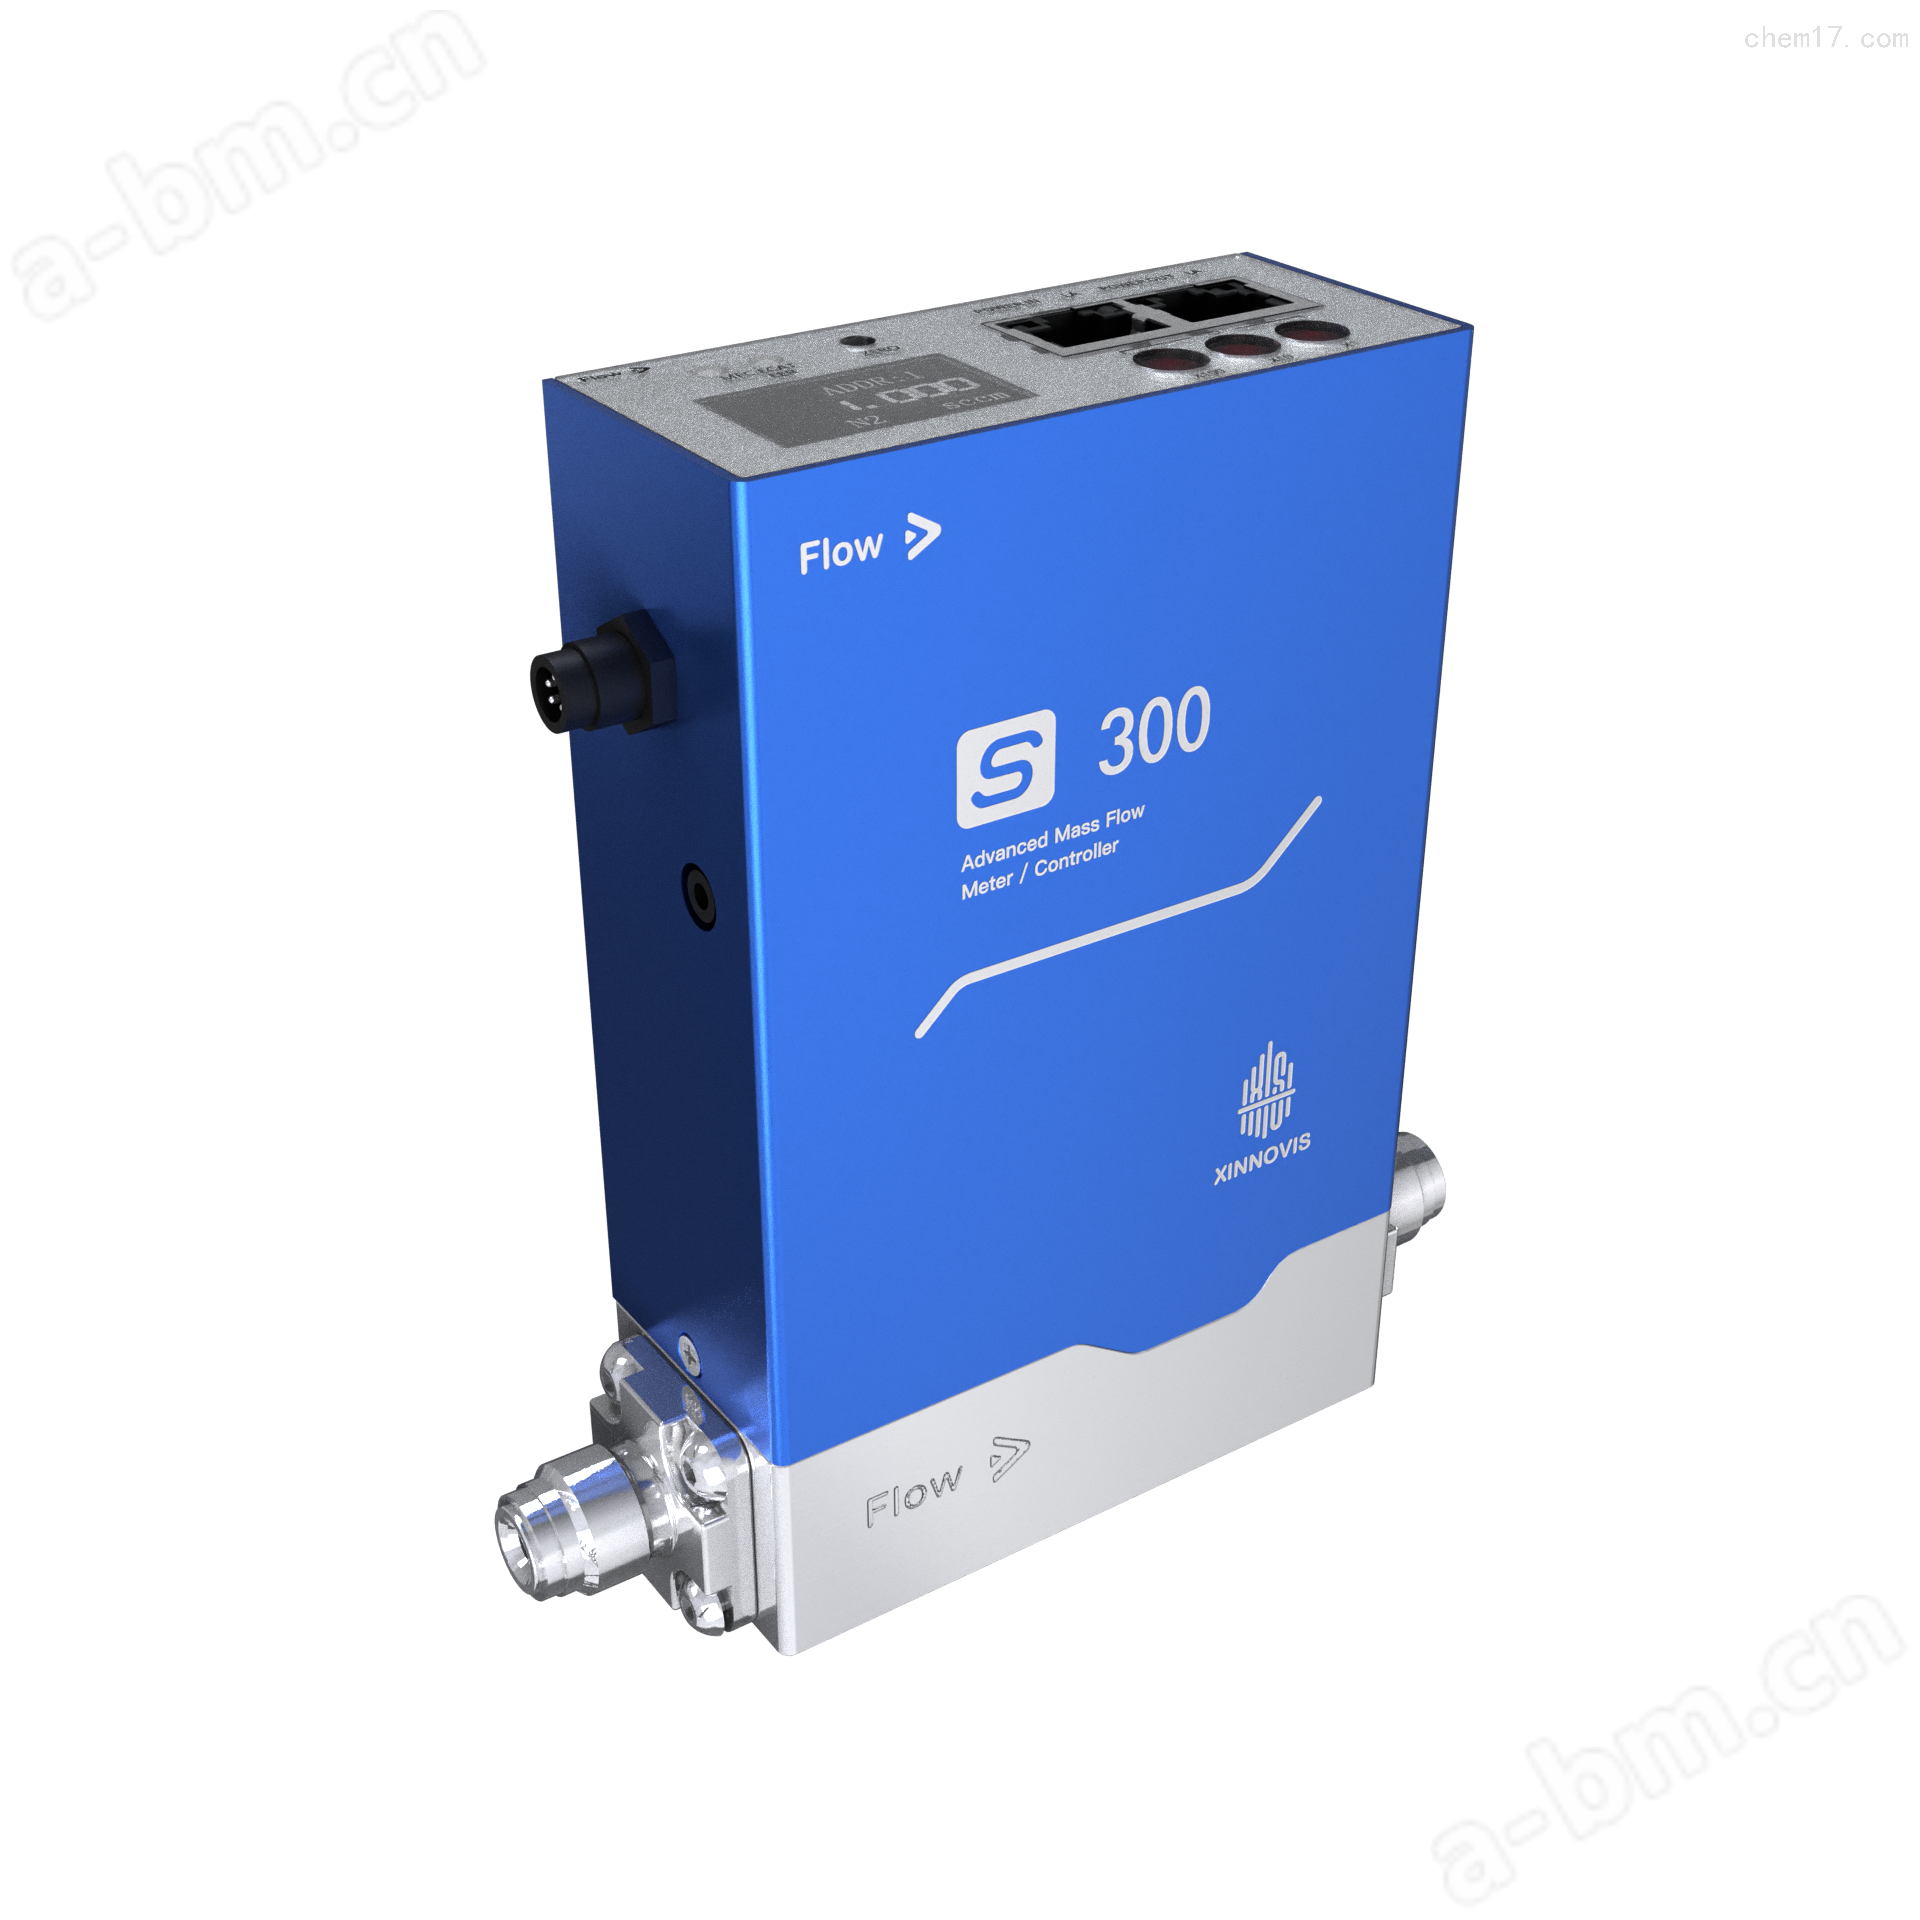 销售气体质量流量控制器s-300生产